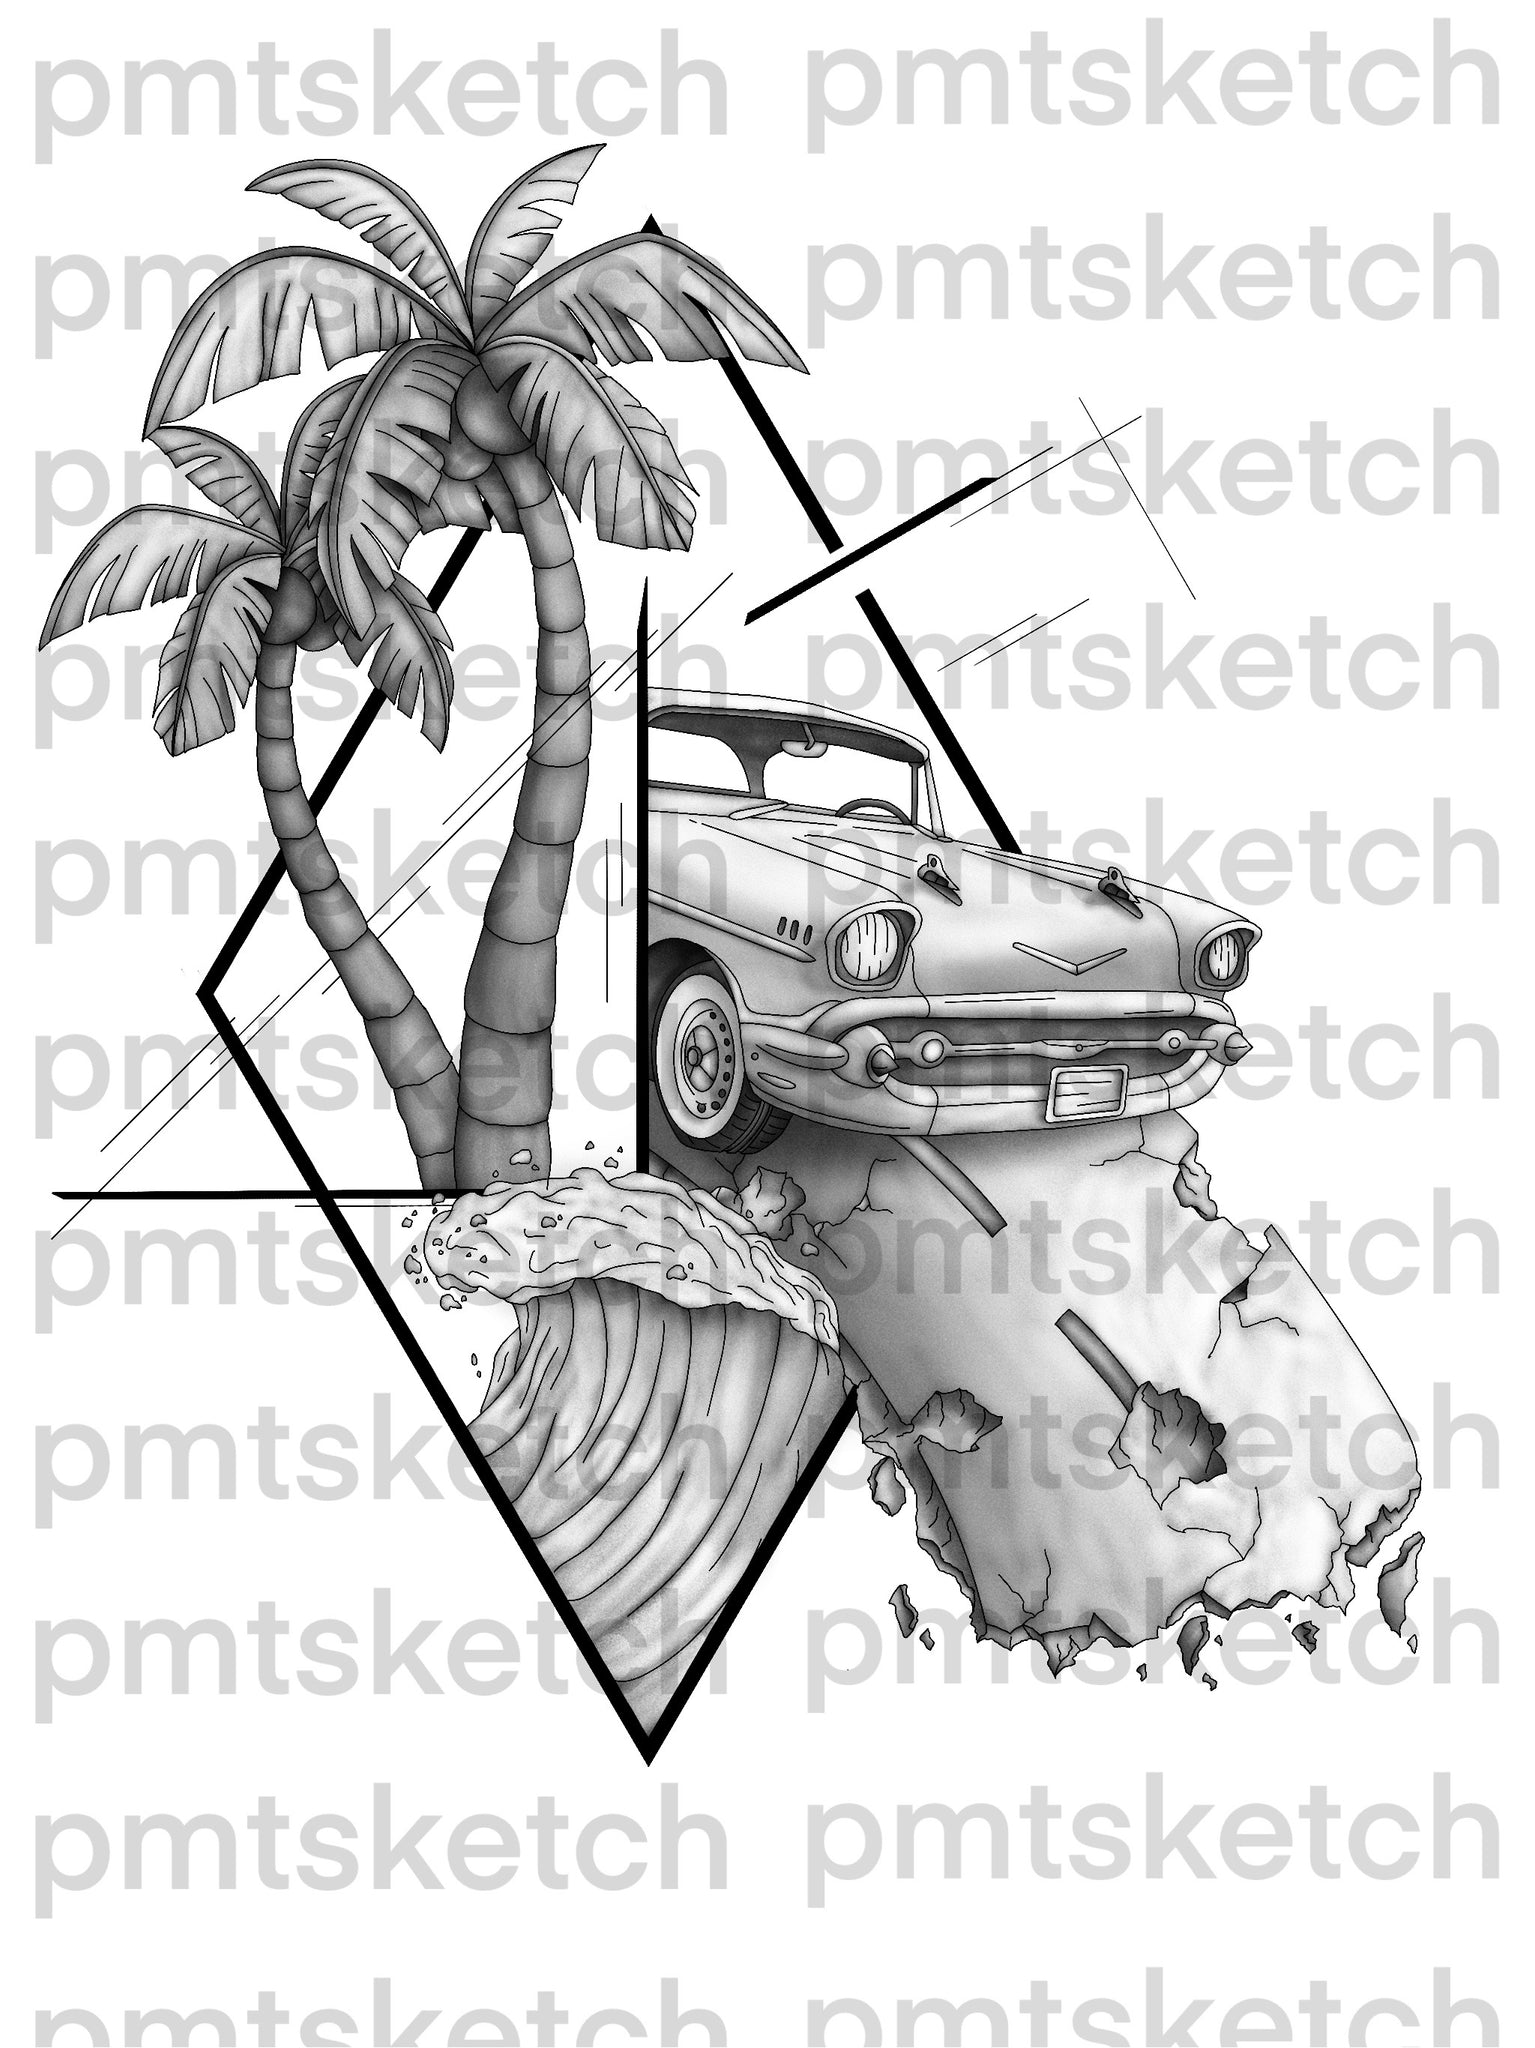 Shaded Car / Travel / Palm